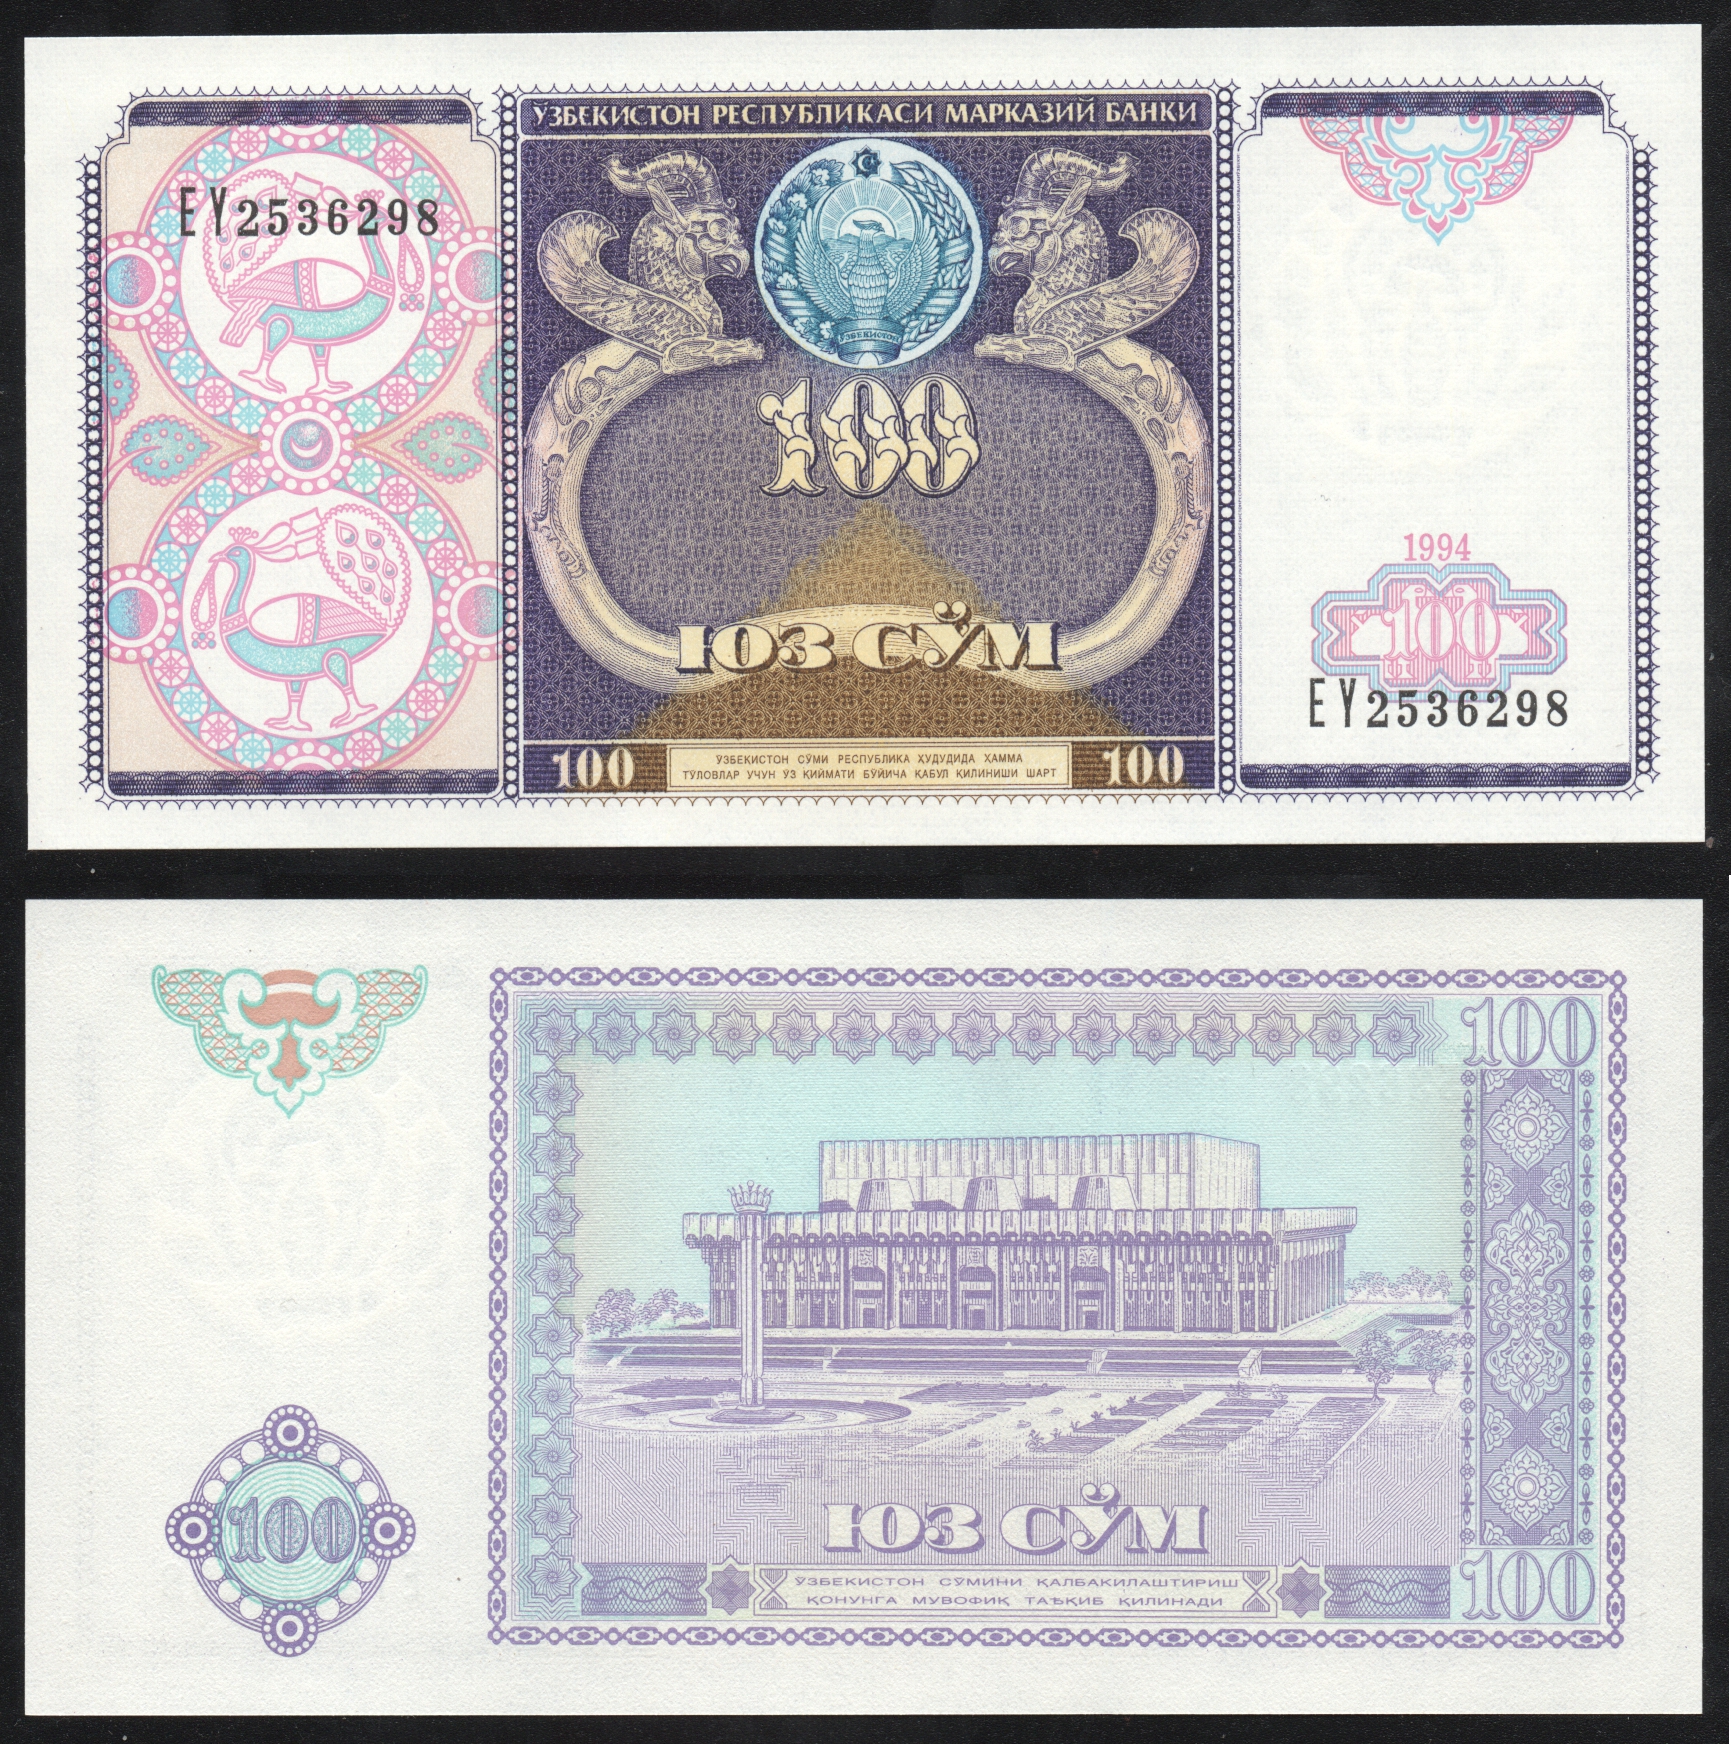 Узбекистан валюта сум. Банкноты Узбекистана 50, 100 сум 1994г. 100 So'm Узбекистан. Купюра 100 сум Узбекистан. 100 Сум 1994 Узбекистан.